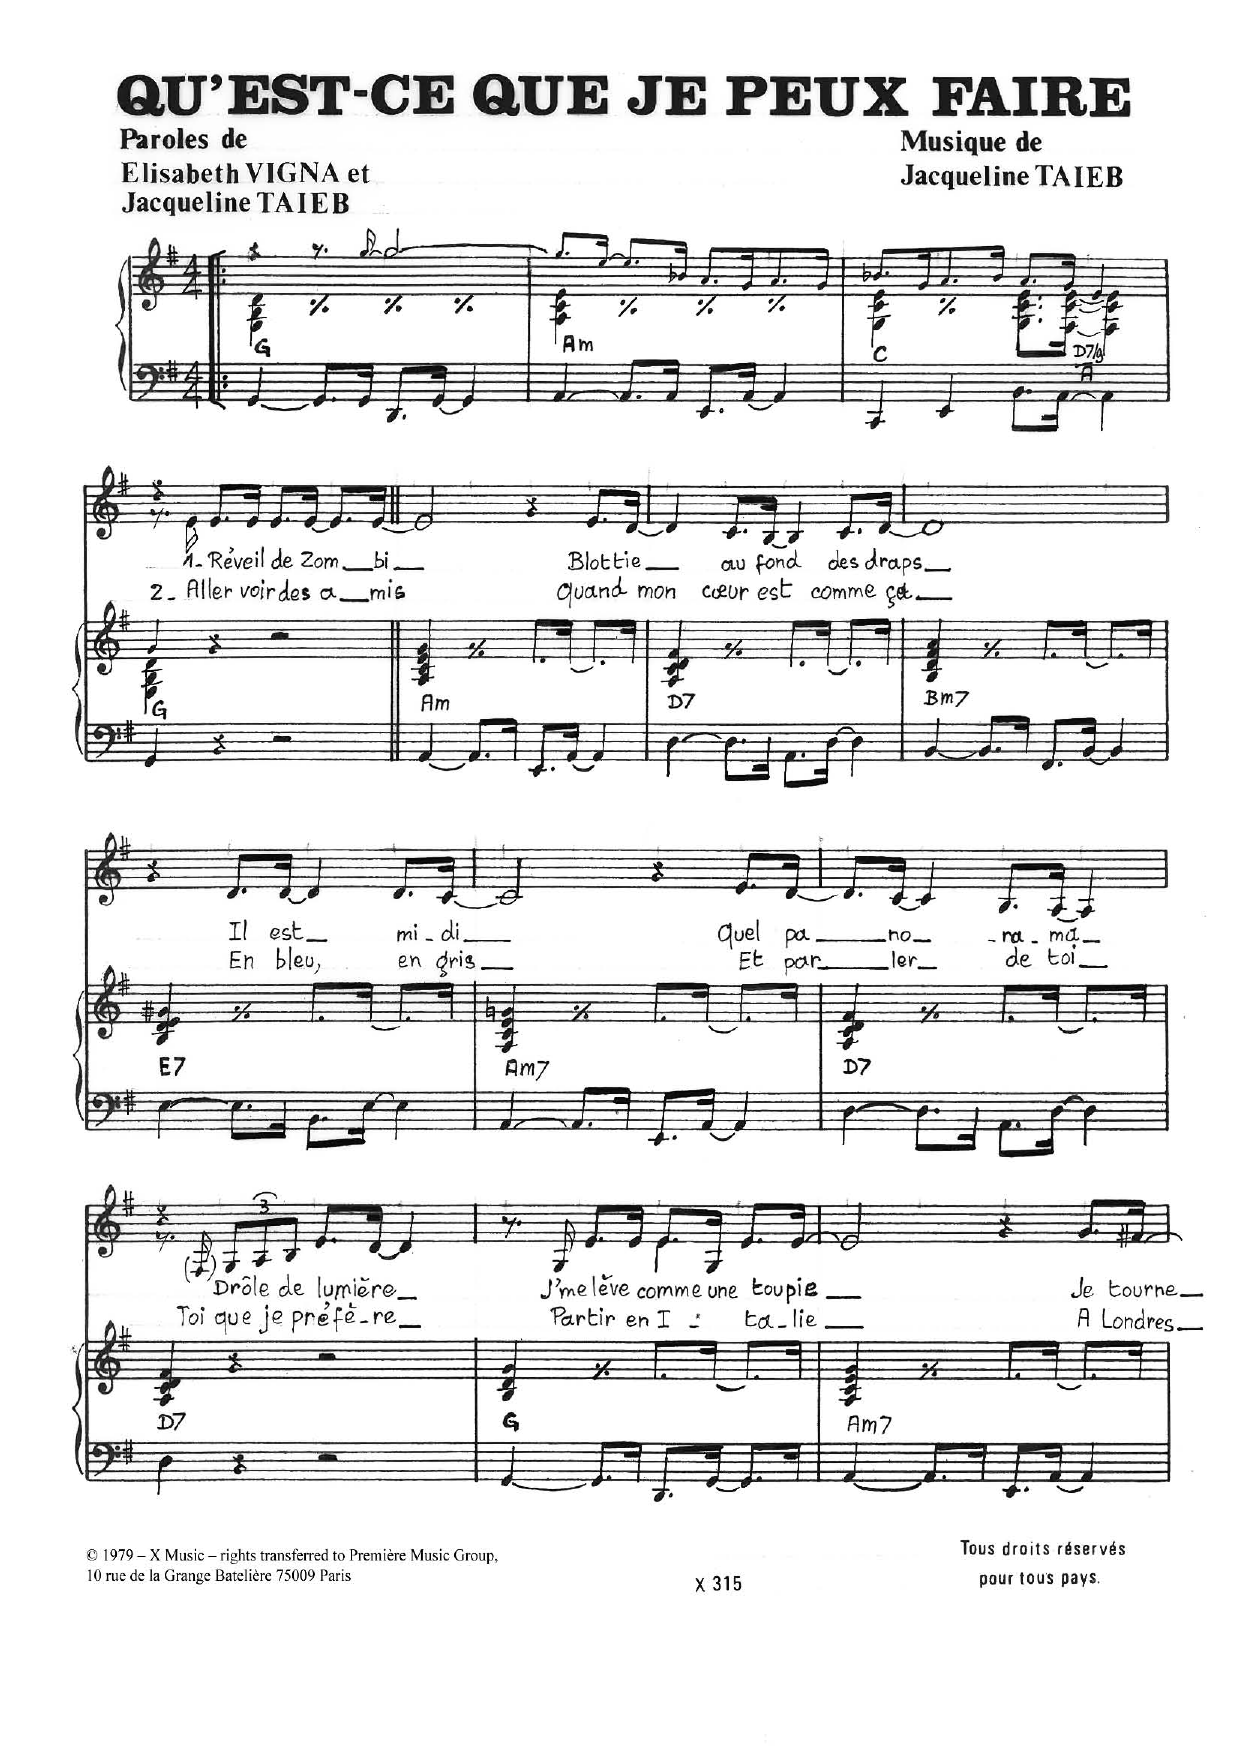 Jacqueline Taieb Qu'est-Ce Que J'peux Faire Sheet Music Notes & Chords for Piano & Vocal - Download or Print PDF